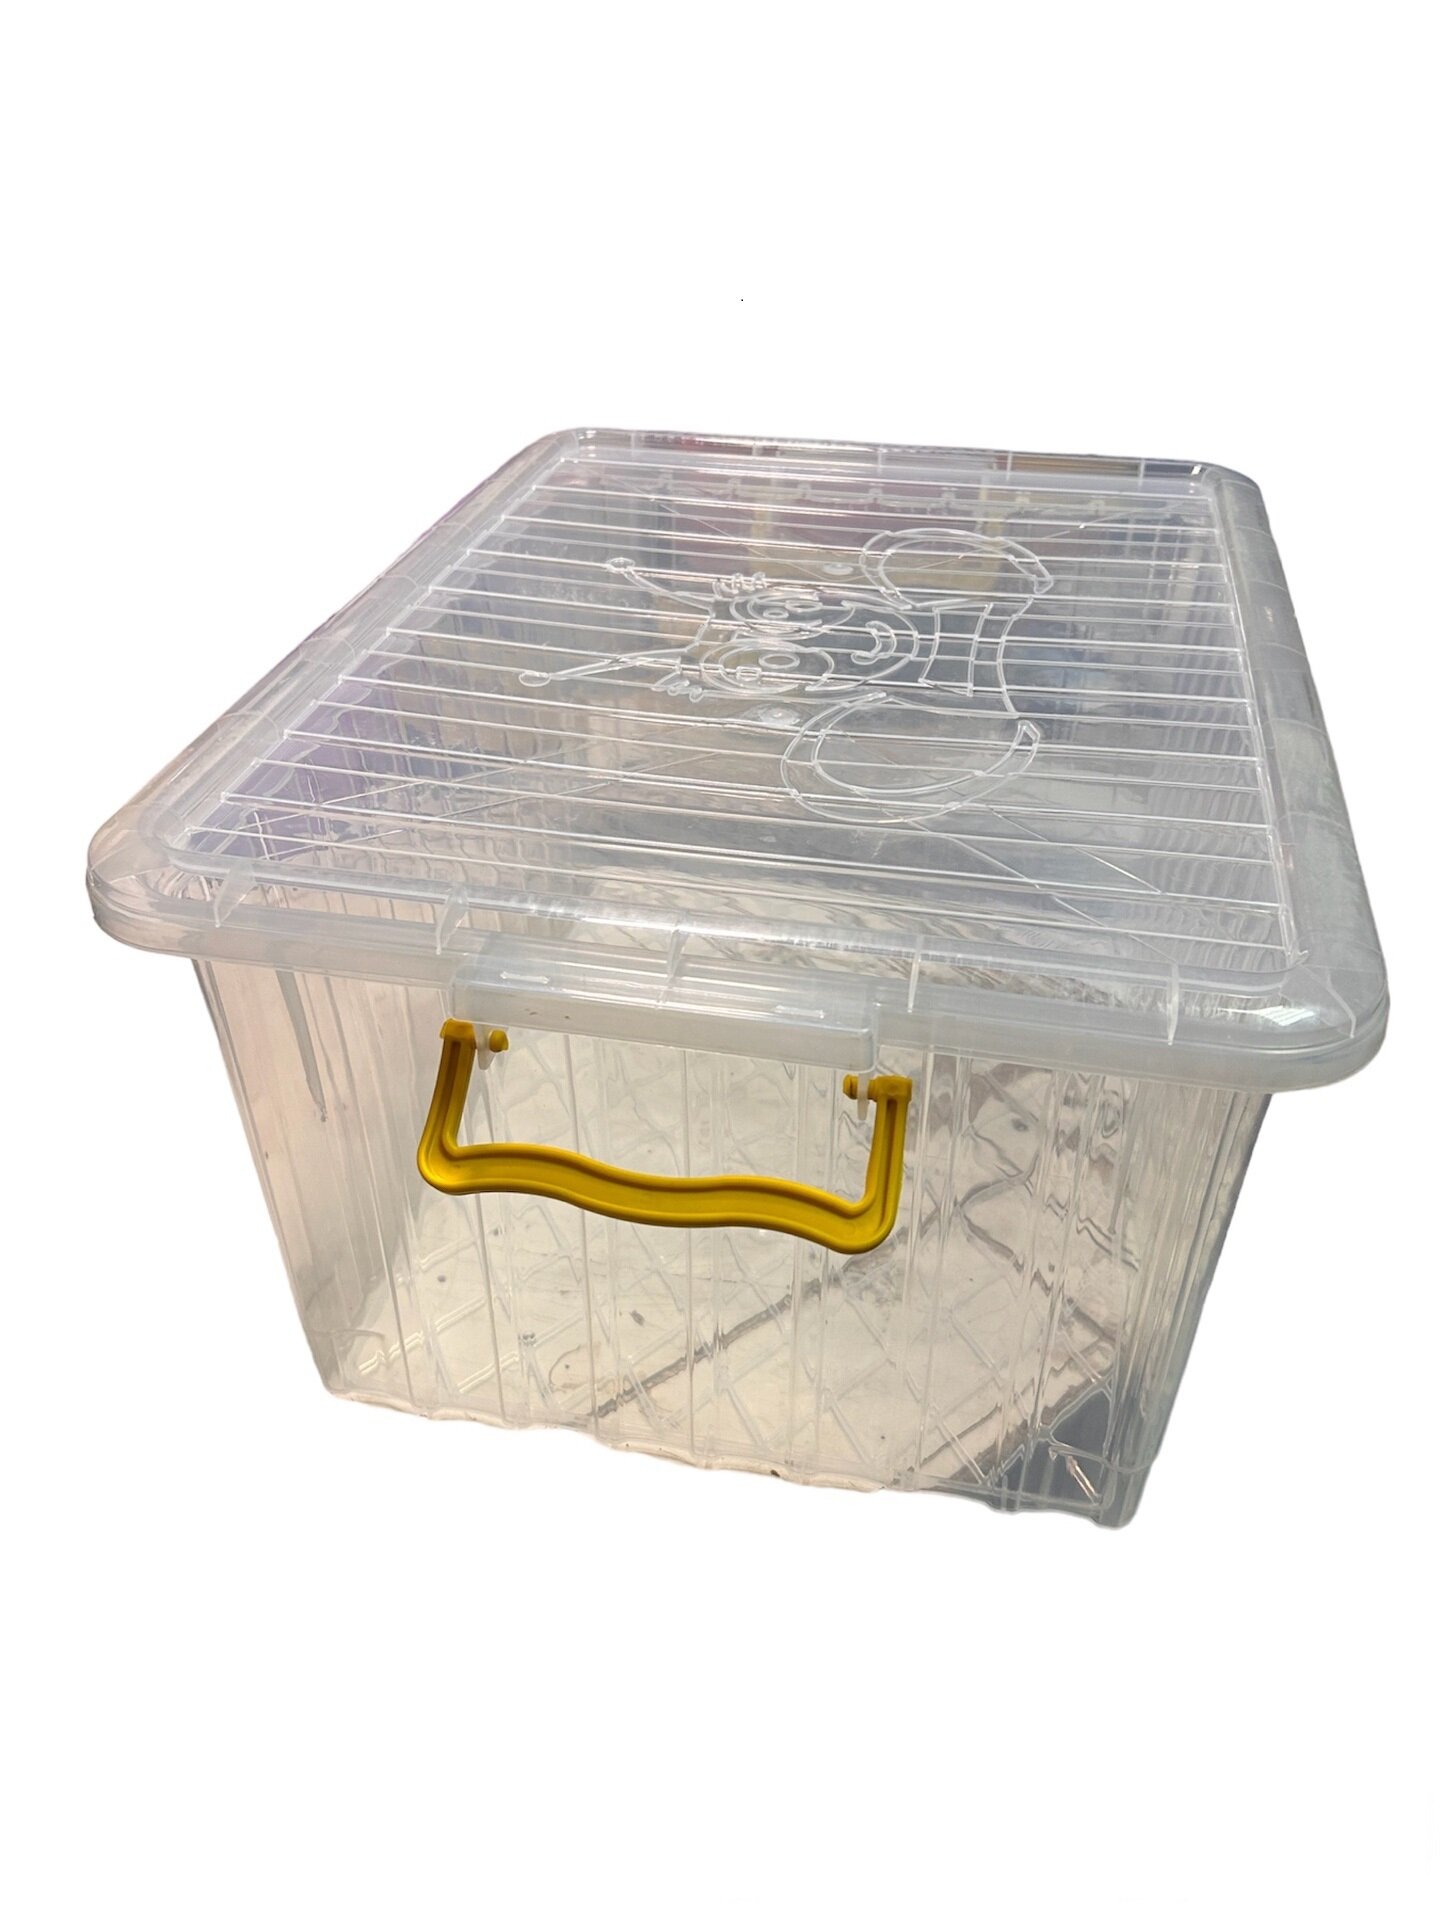 Универсальный ящик пчеловода для переноски 8 рамок Langstroth. Ящик для хранения пчелиных рамок Langstroth пр-во Турция